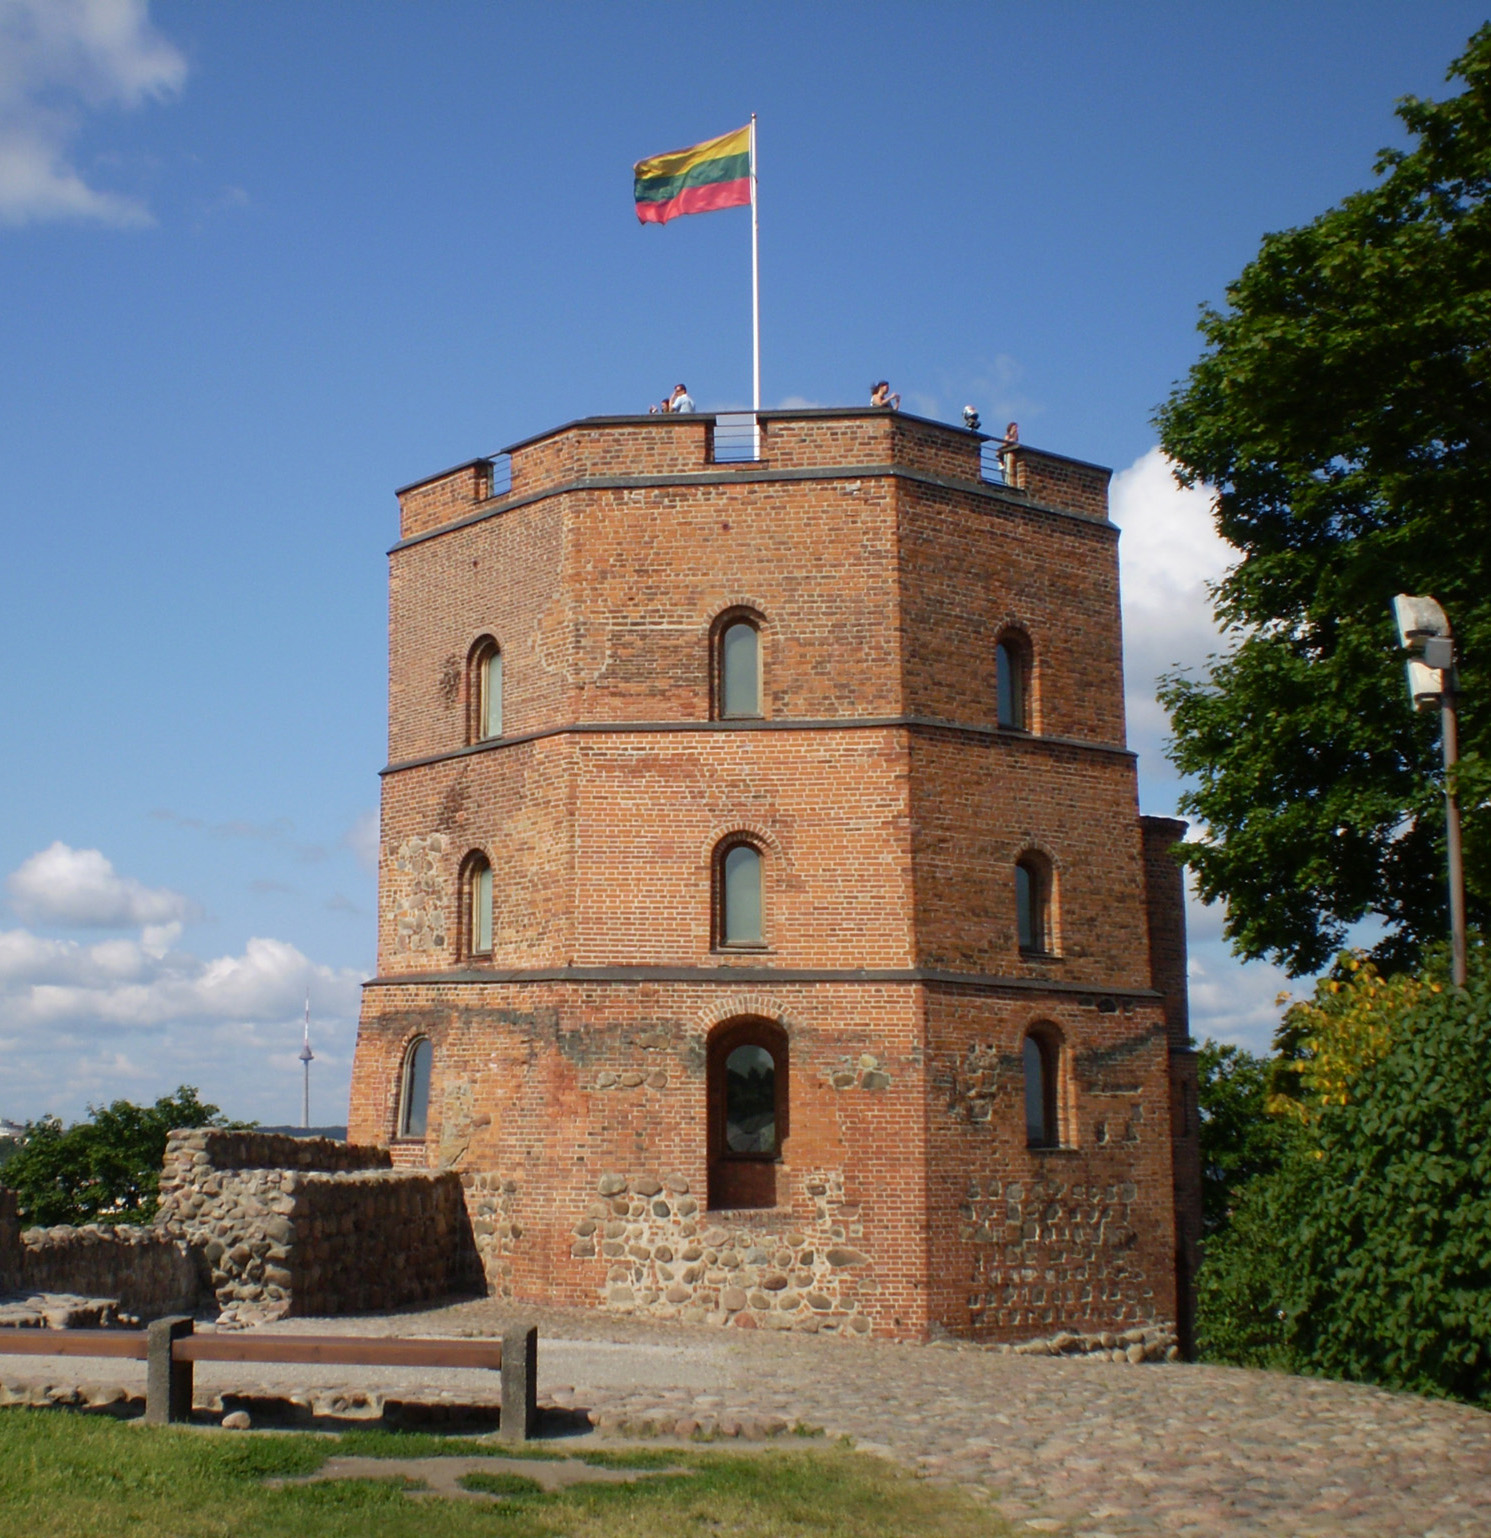 File:Gediminas Tower.jpg - Wikimedia Commons